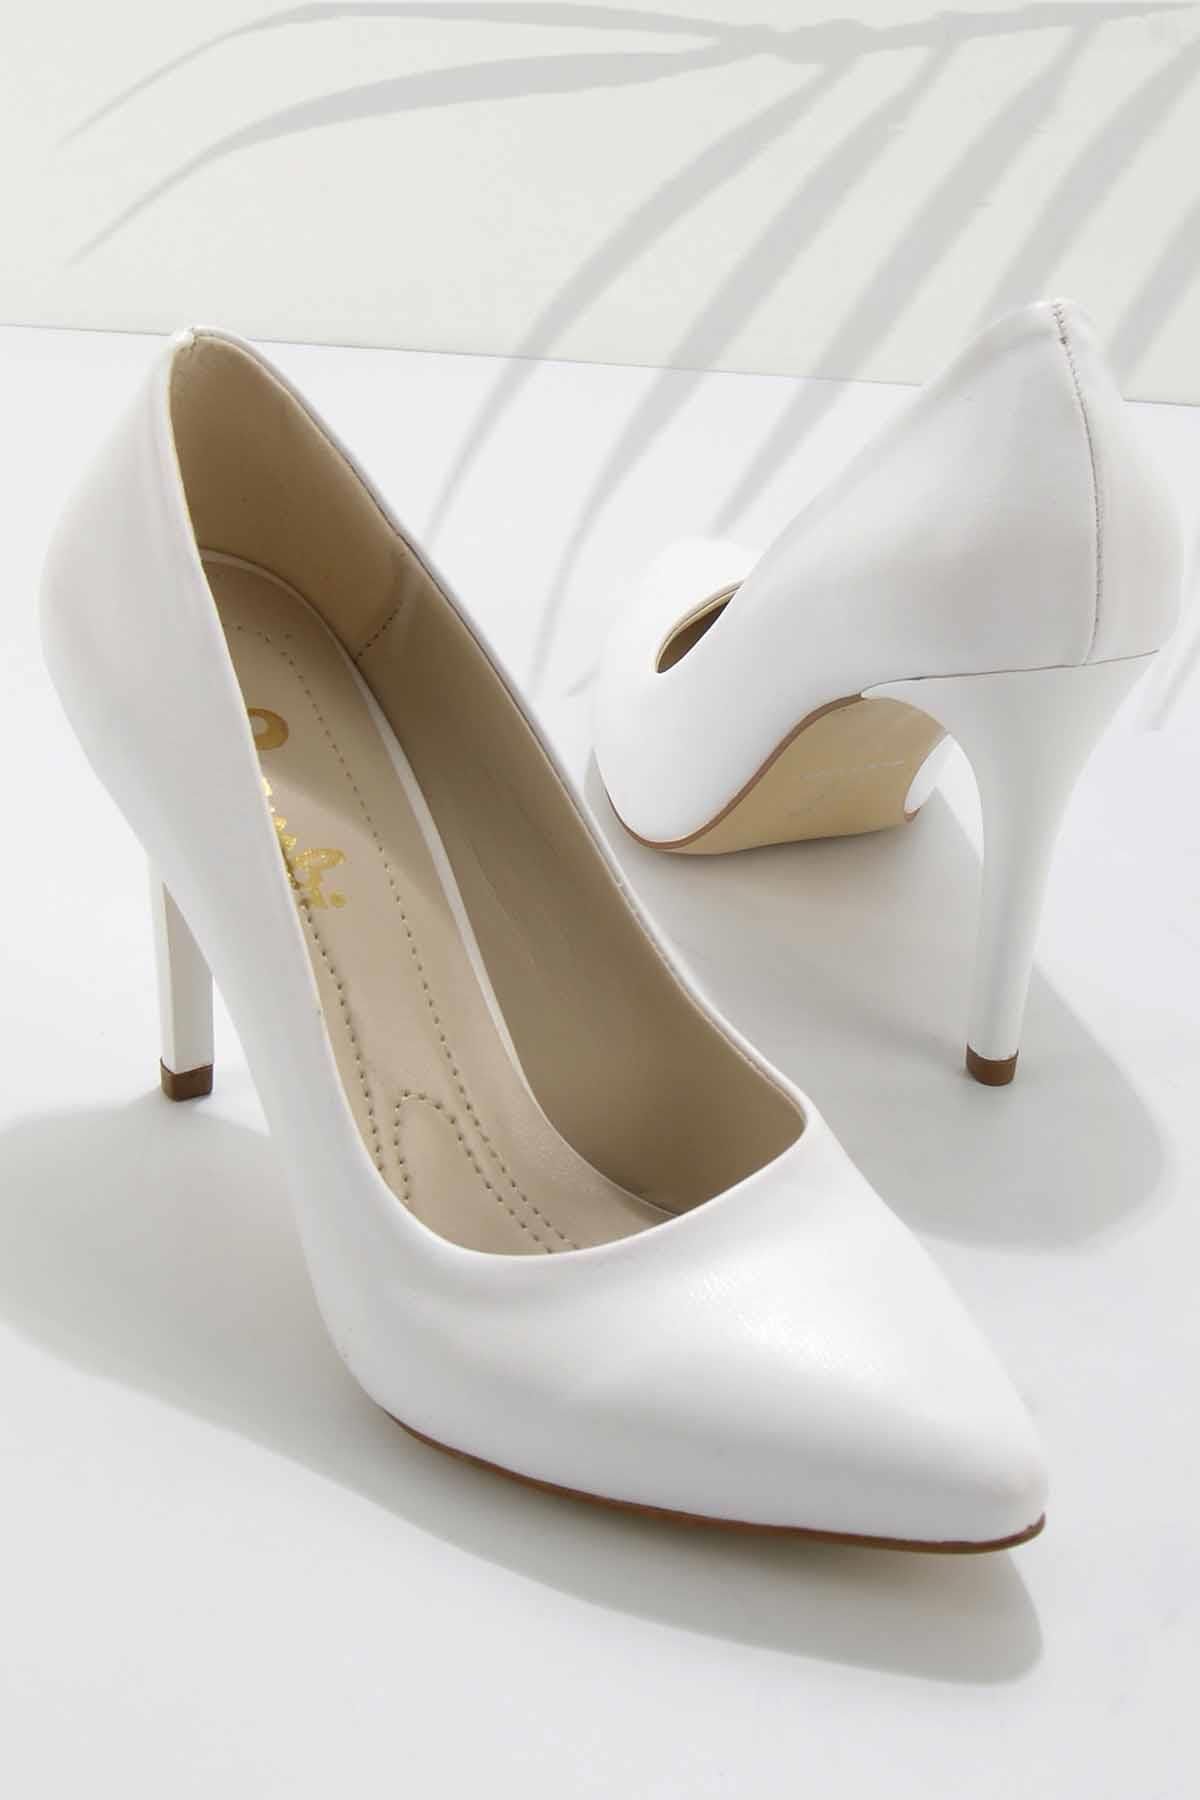 Bambi Beyaz Kadın Klasik Topuklu Ayakkabı K01980050309